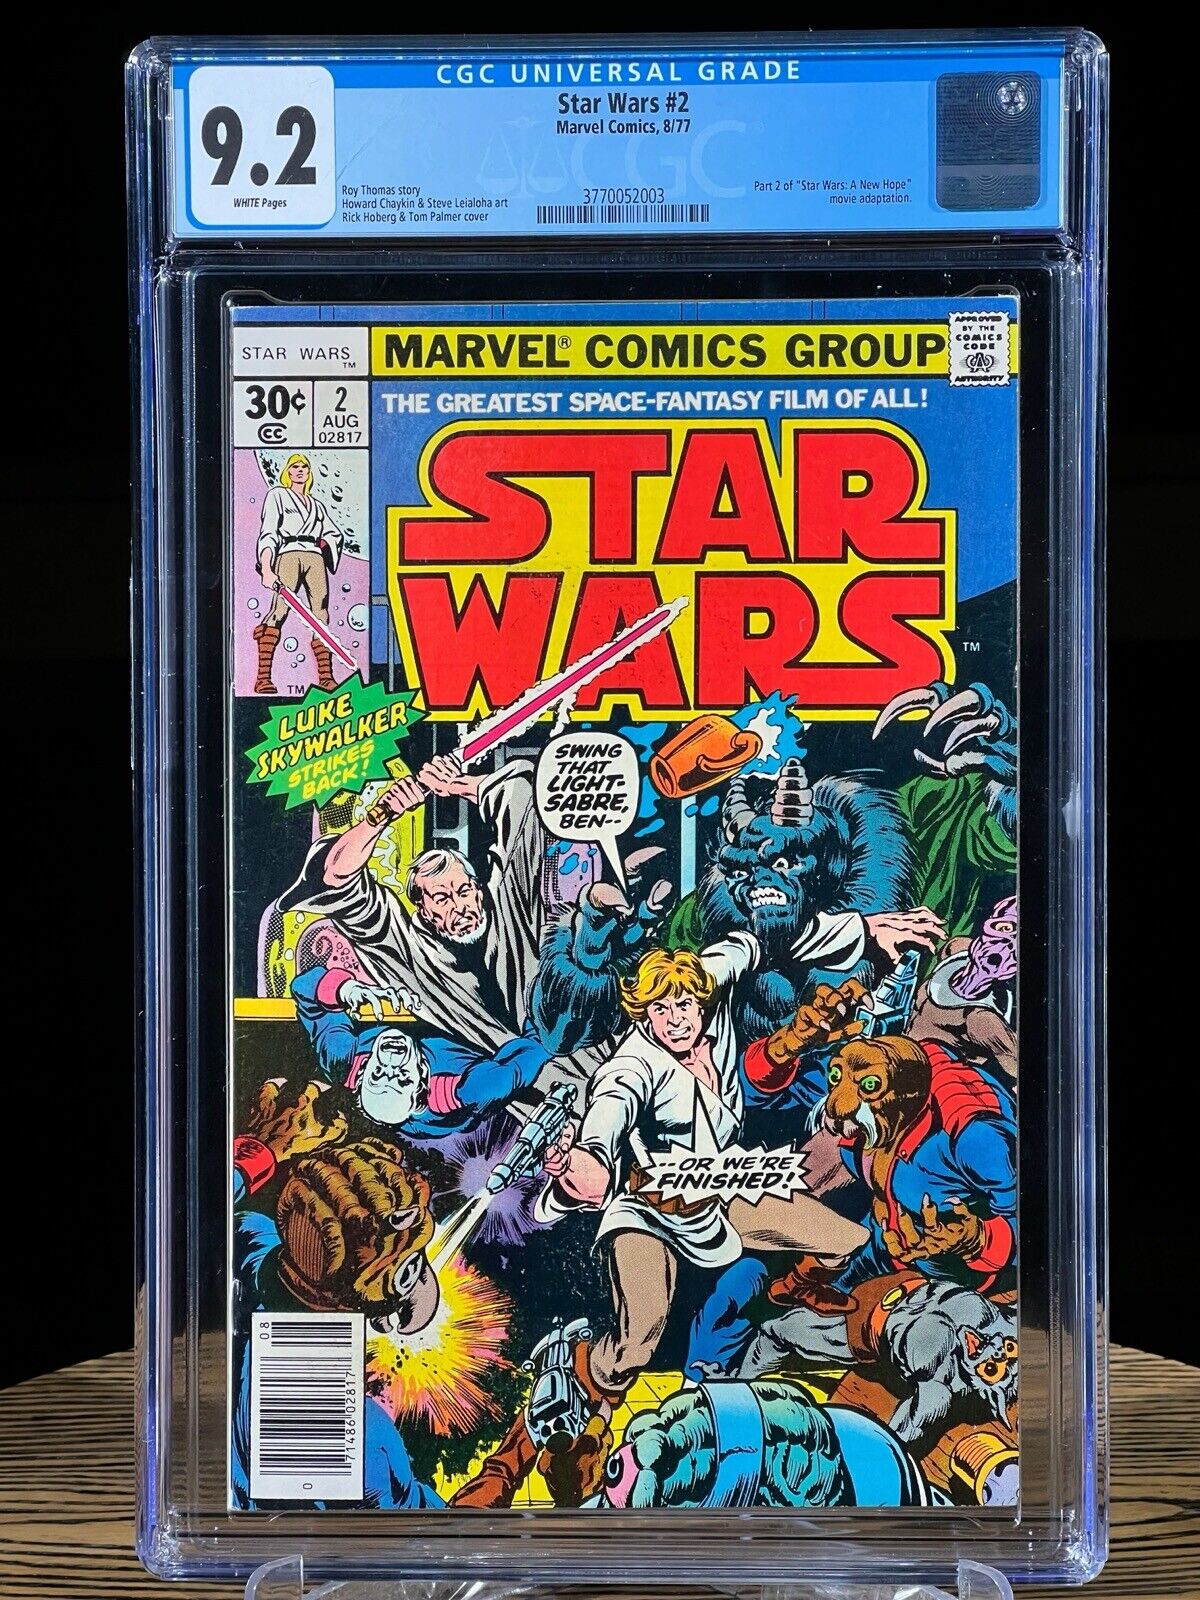 STAR WARS #2 CGC 9.2 Marvel Comics July 1977 1st Appearance Obi Wan Kenobi 